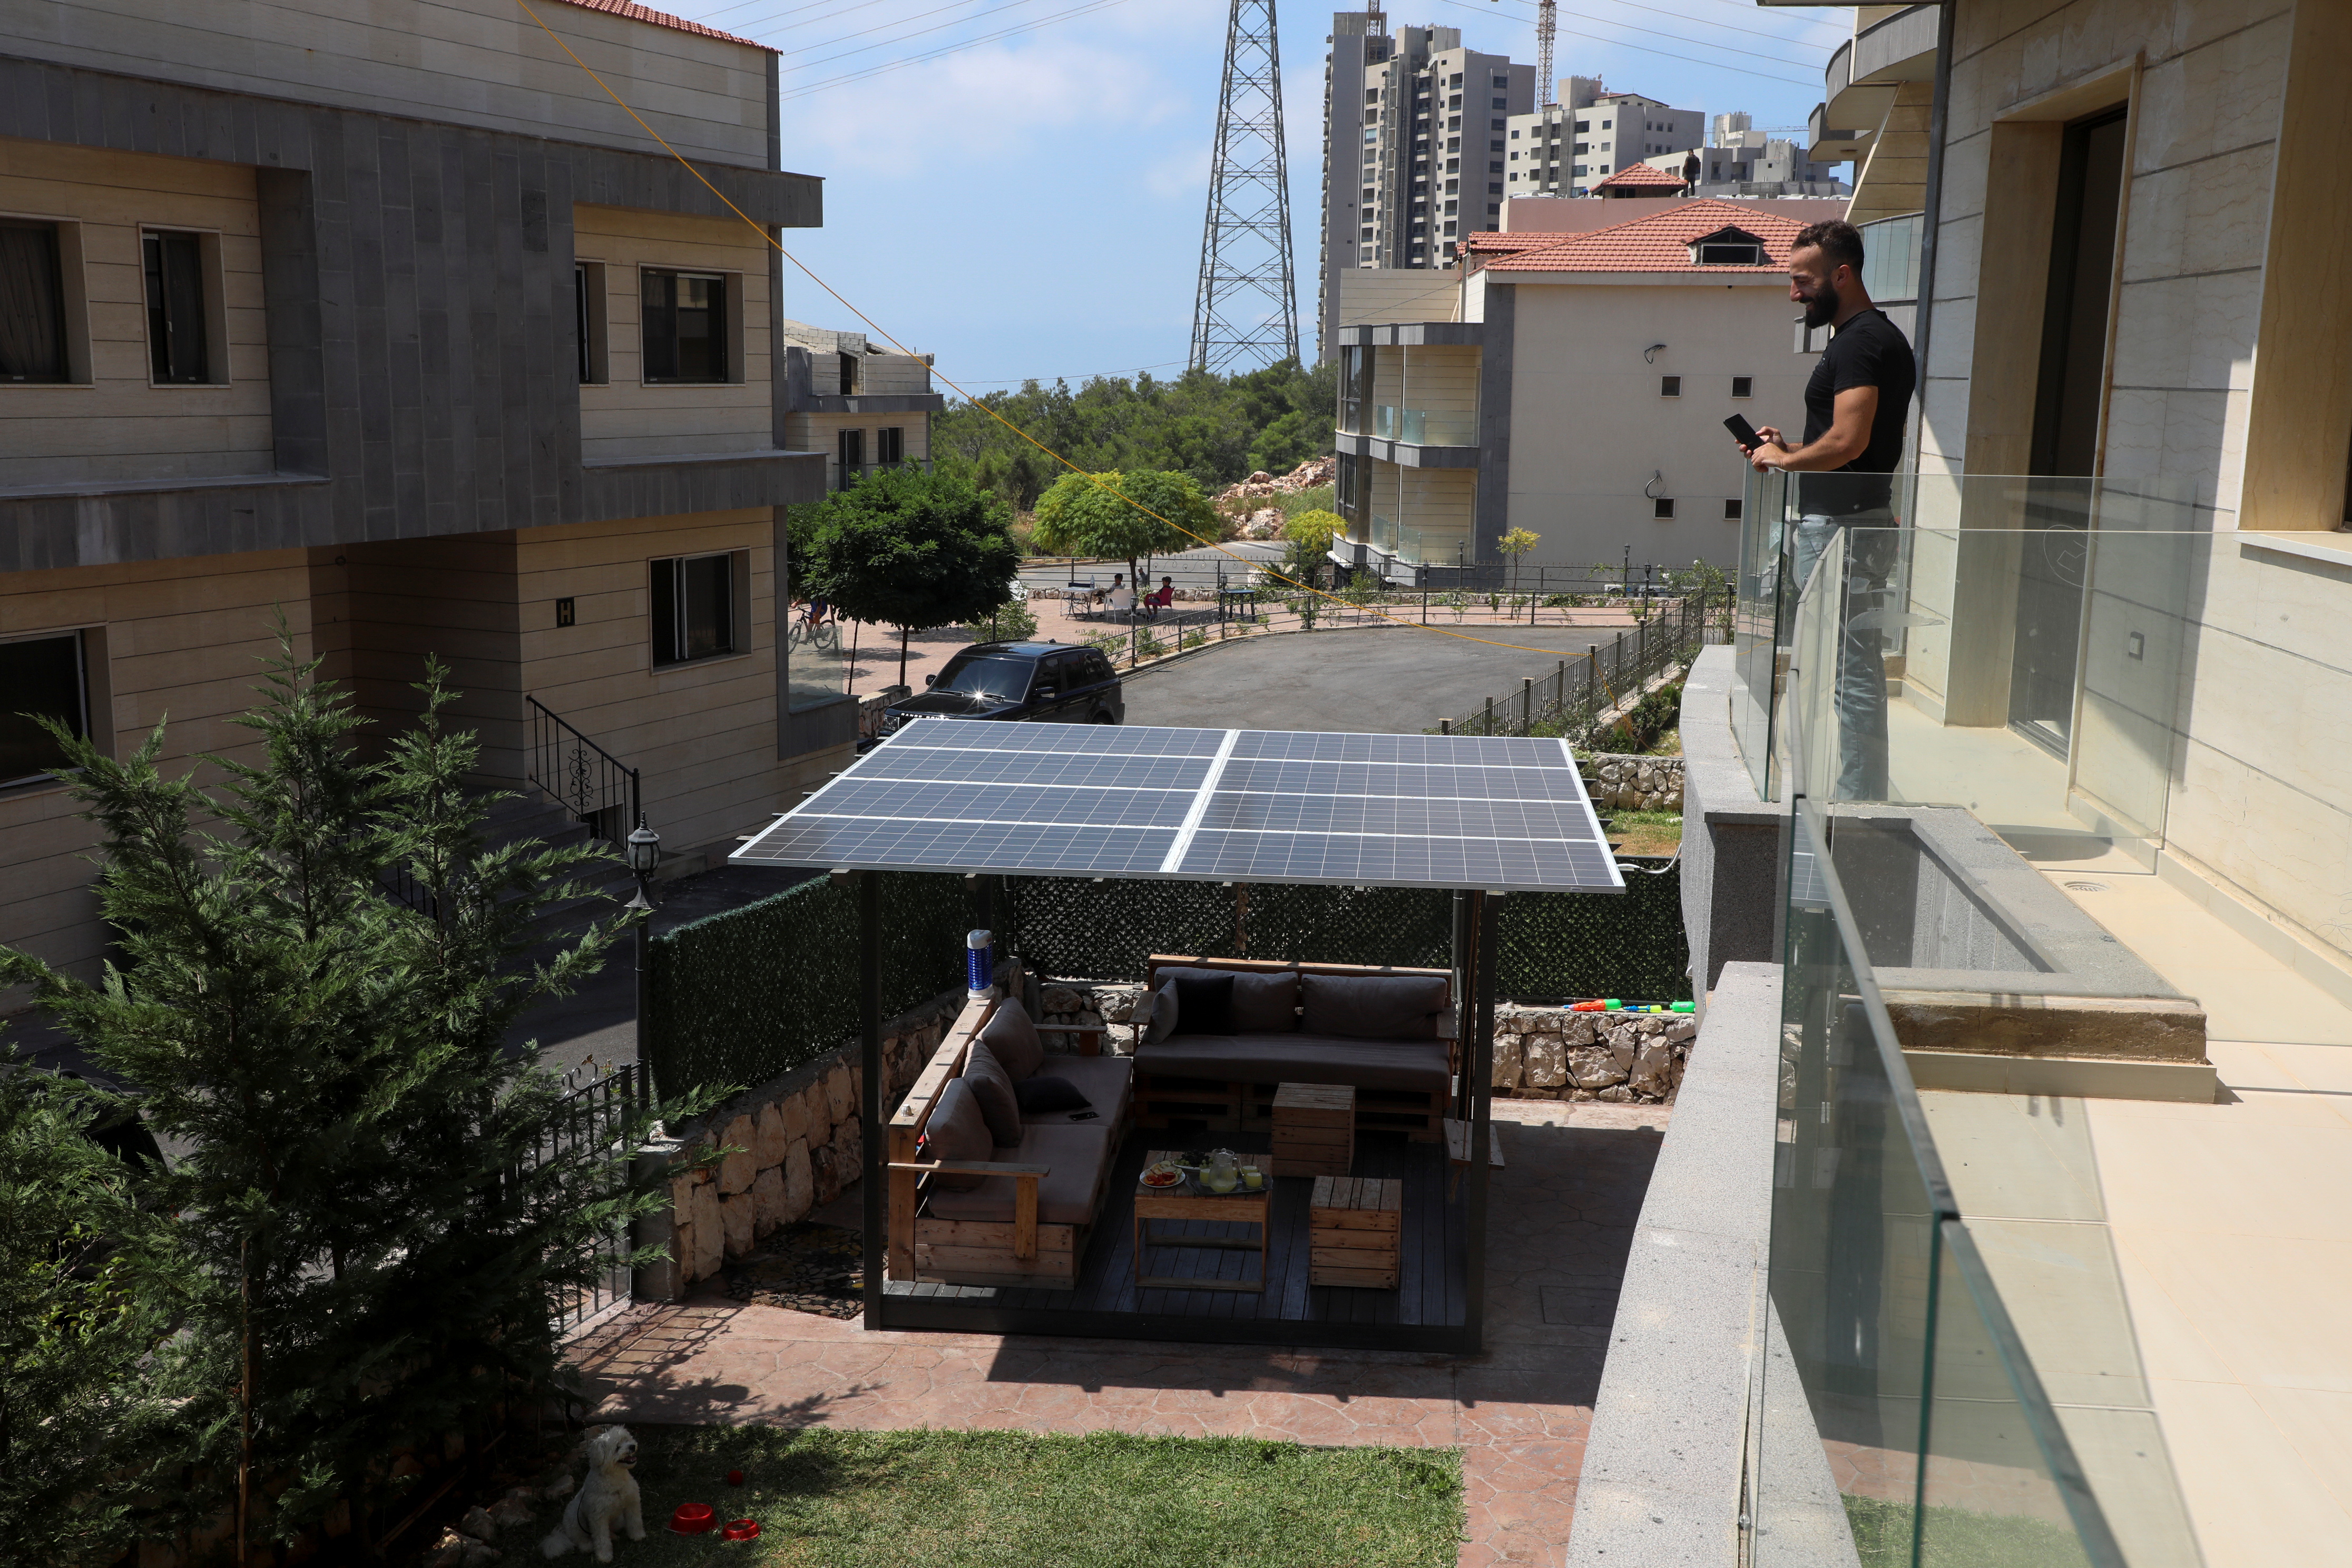 Un libanés se asoma a un balcón mientras observa un panel solar que instaló en su casa de Khaldeh. (REUTERS/Mohamed Azakir)